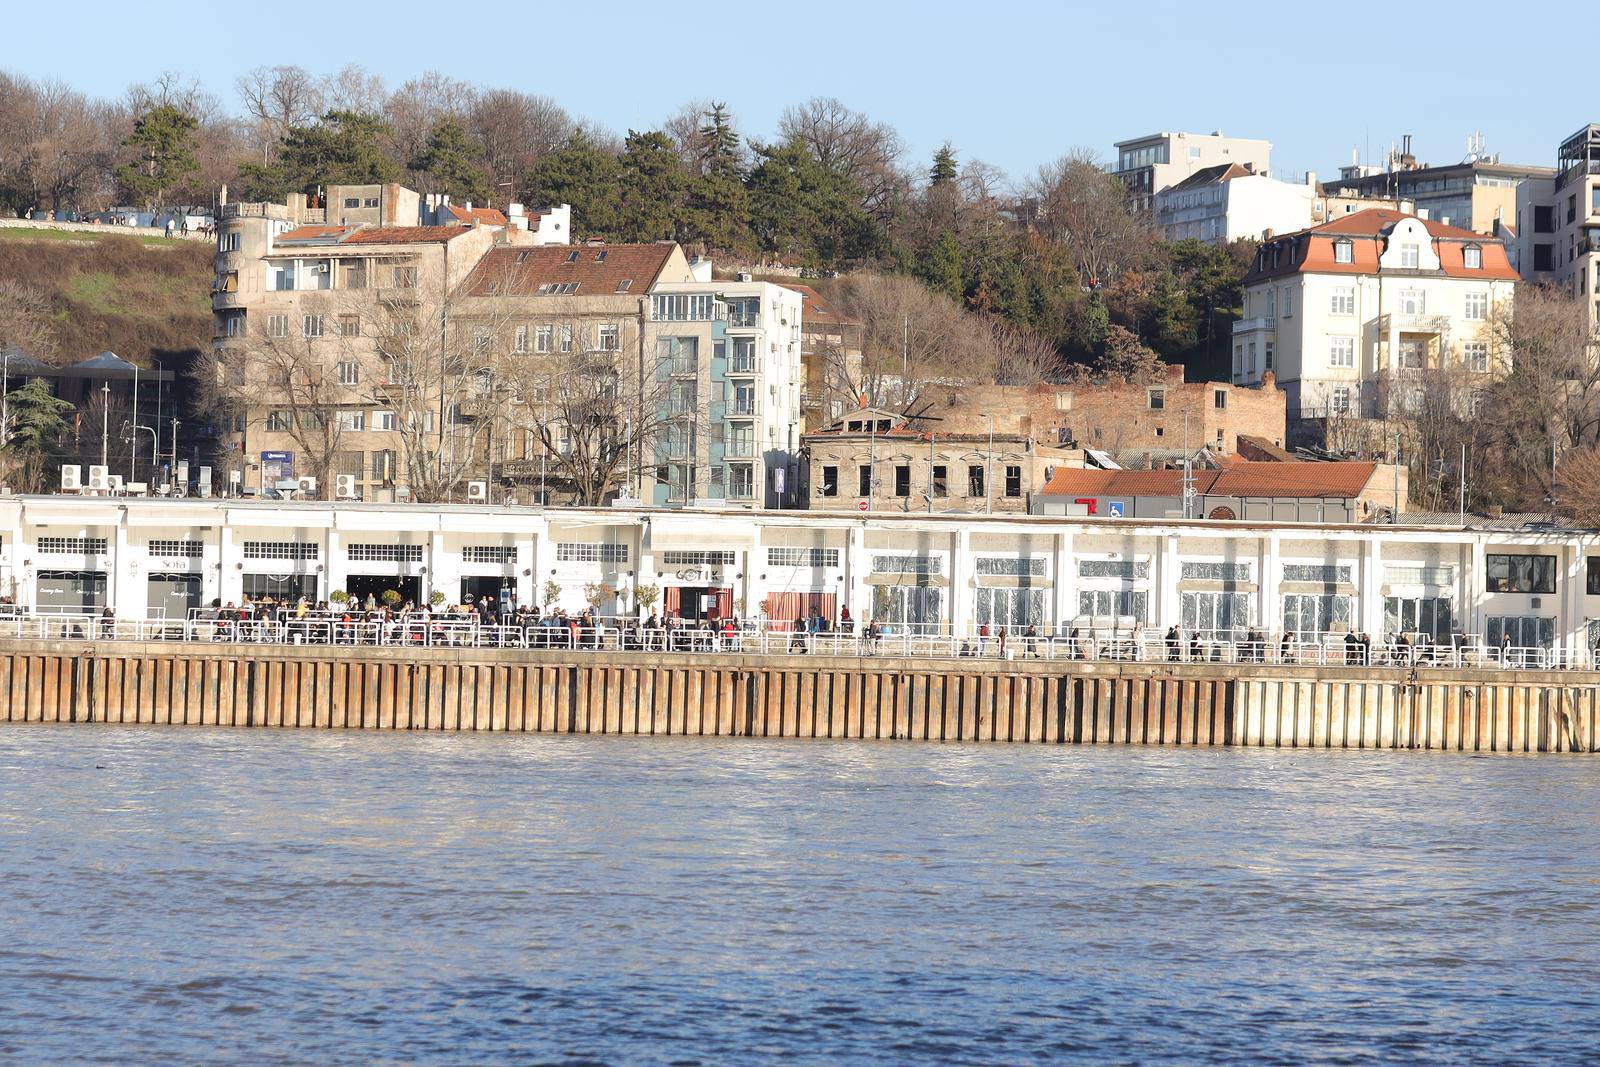 Brodovi pretražuju rijeku ispred kluba, Matejev otac stigao u Beograd: 'Samo da nađem sina'